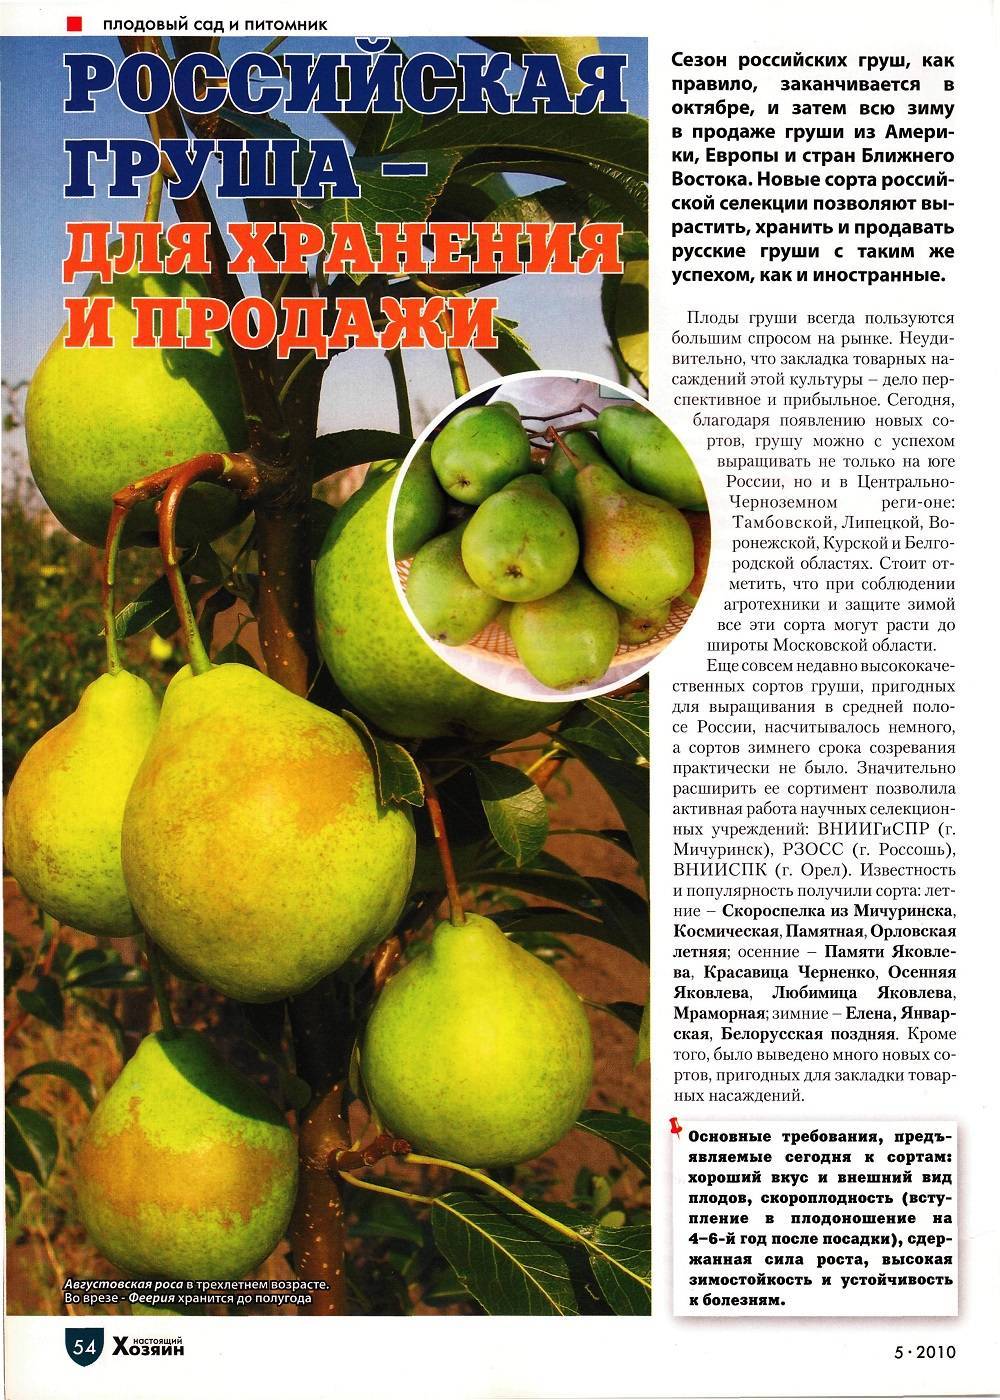 Сорта груш для средней полосы россии (летние, осенние, зимние) с фото и описанием